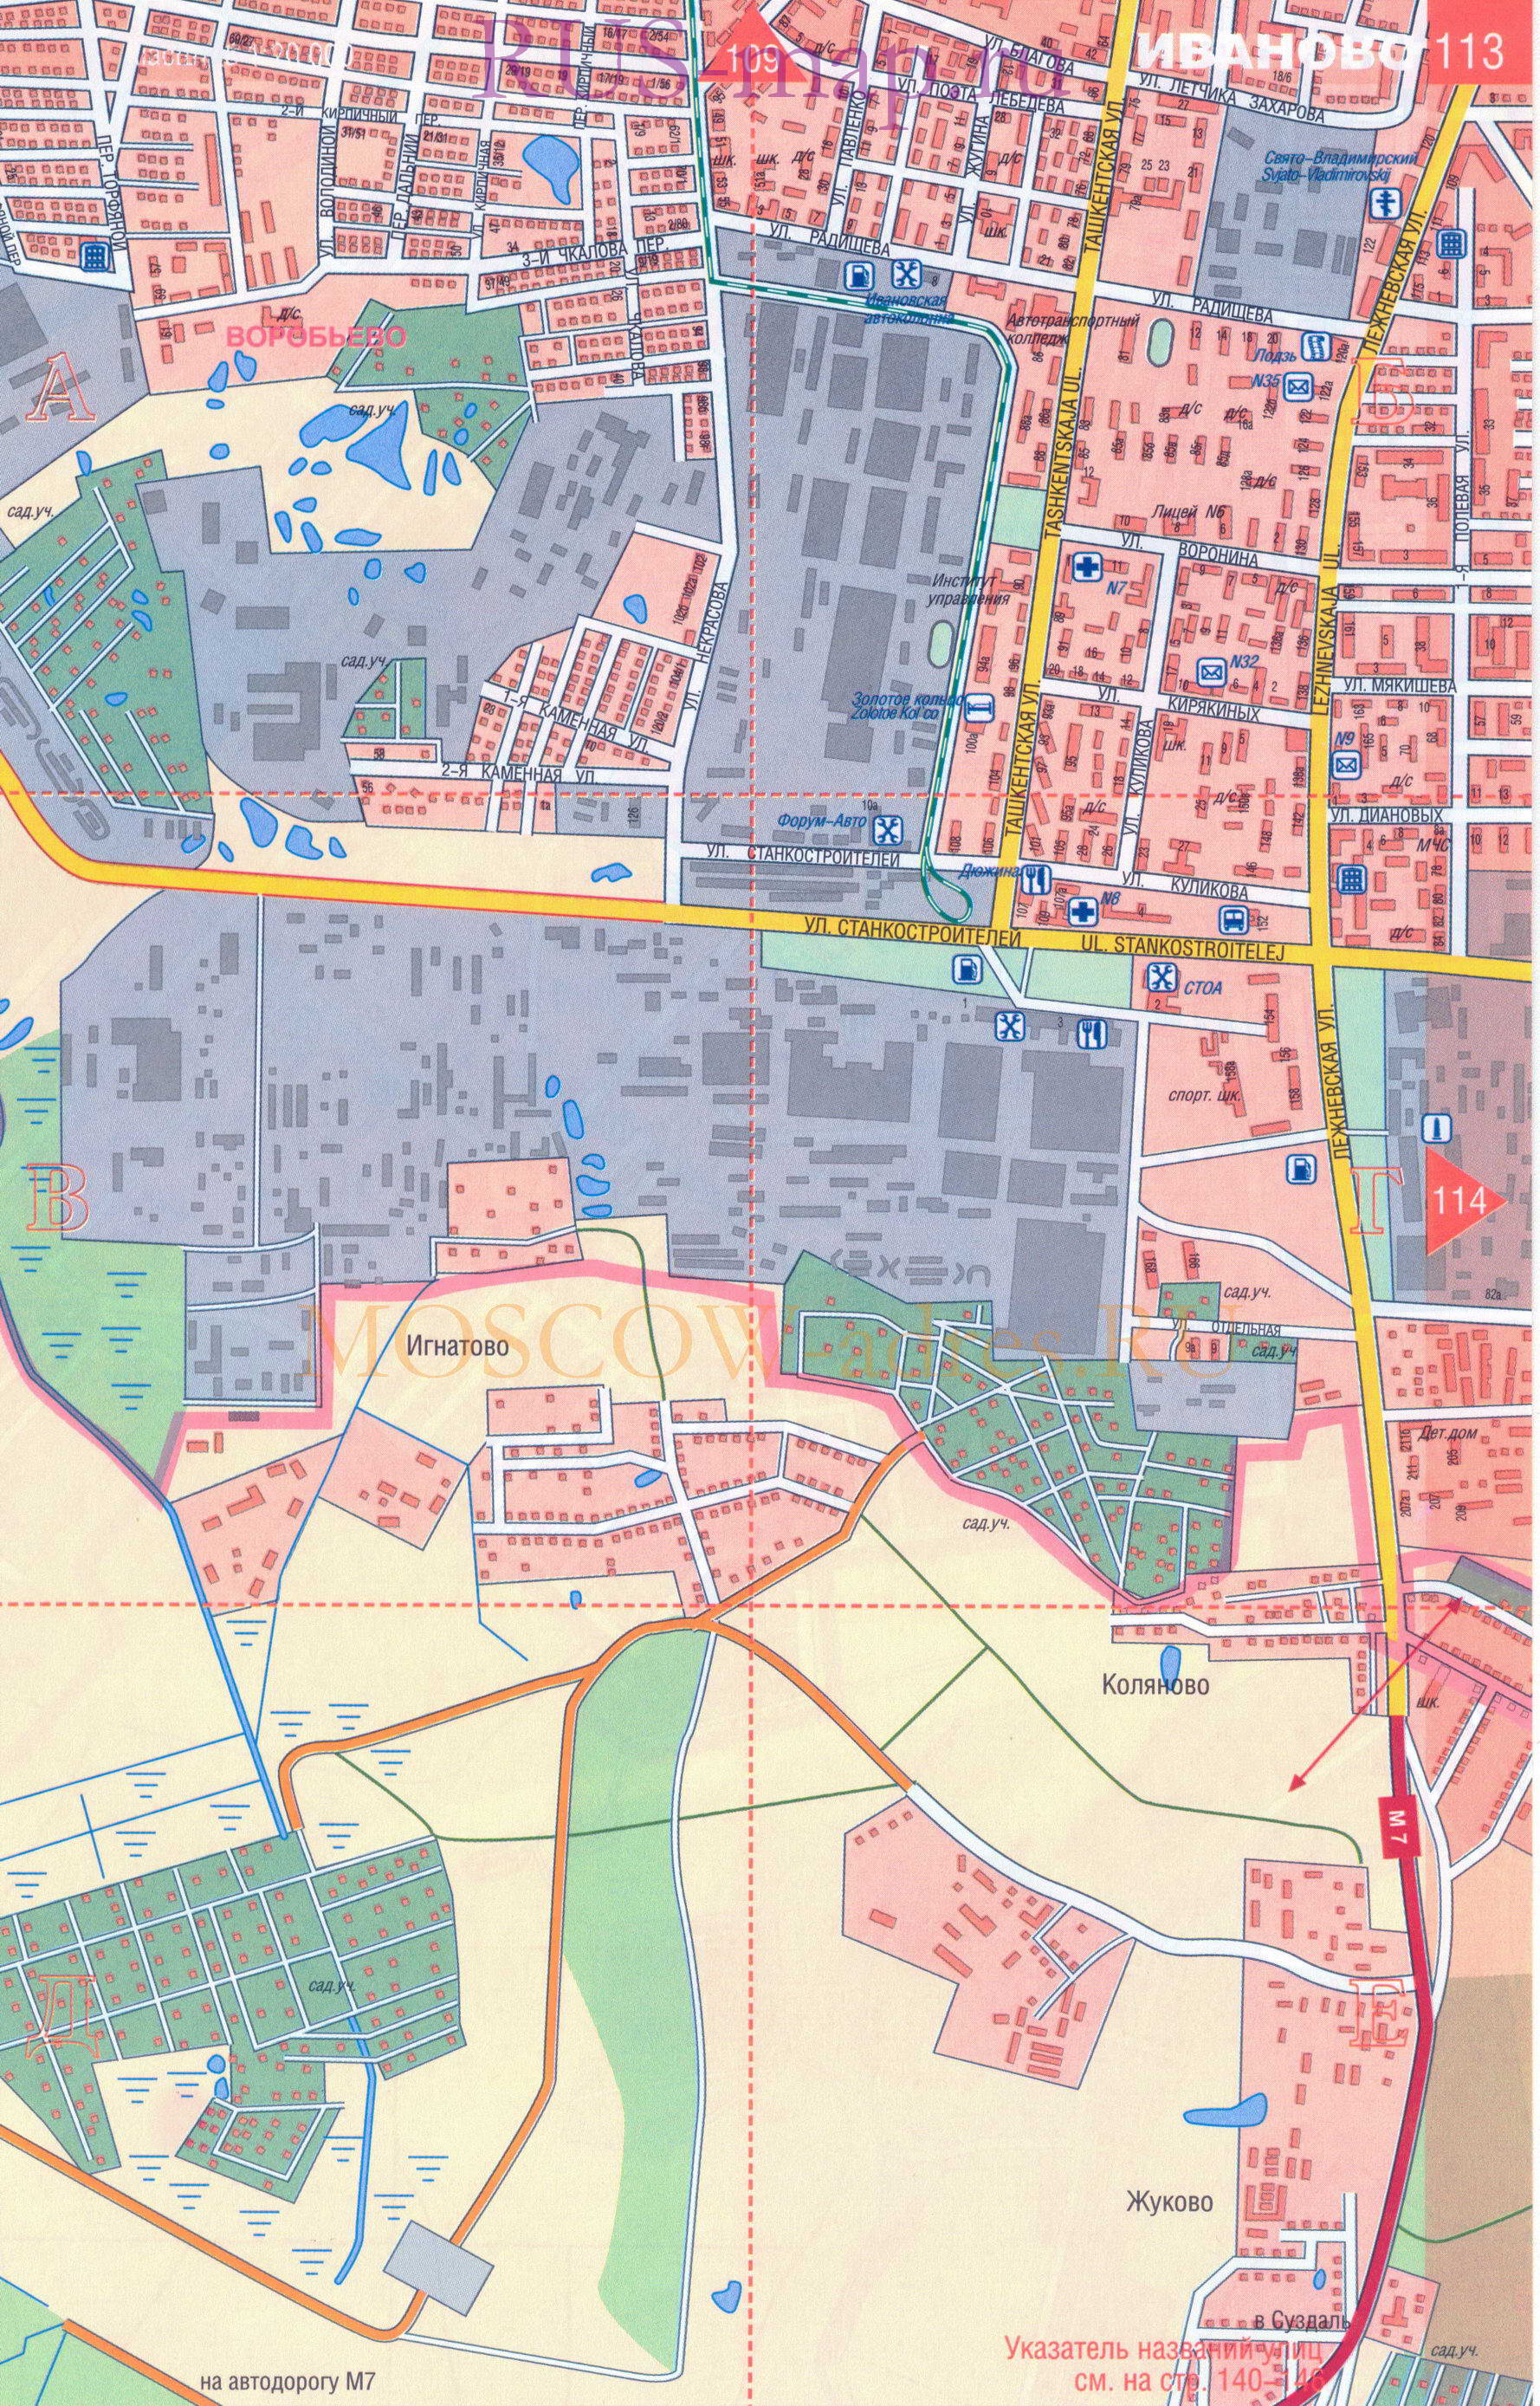 Иваново. Карта города Иваново масштаба 1см:200м с достопримечательностями, схемой проезда транспорта, железнодорожными платформами, B2 - 